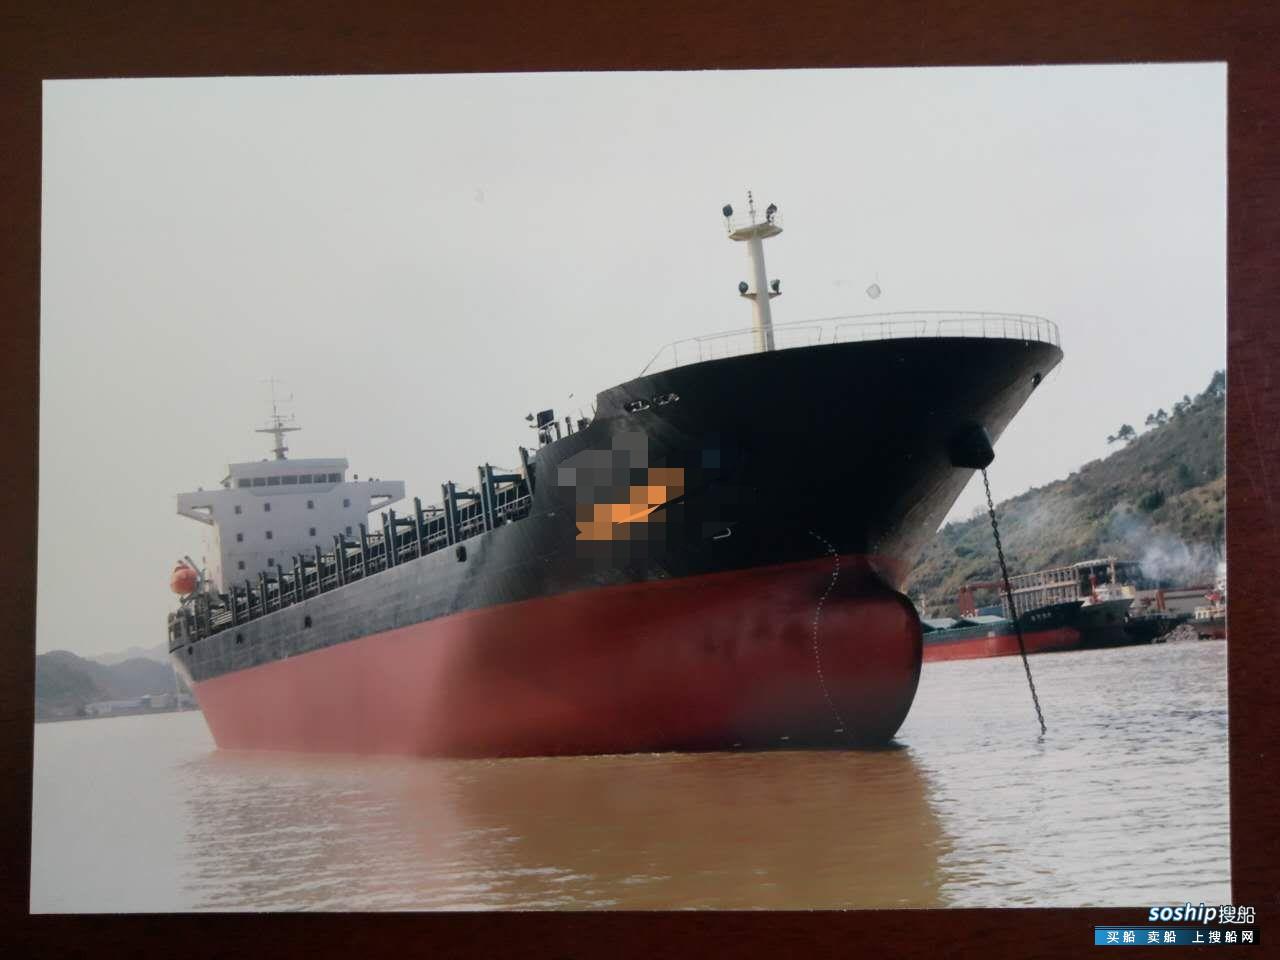 目前最大的集装箱船 出售18500吨集装箱船